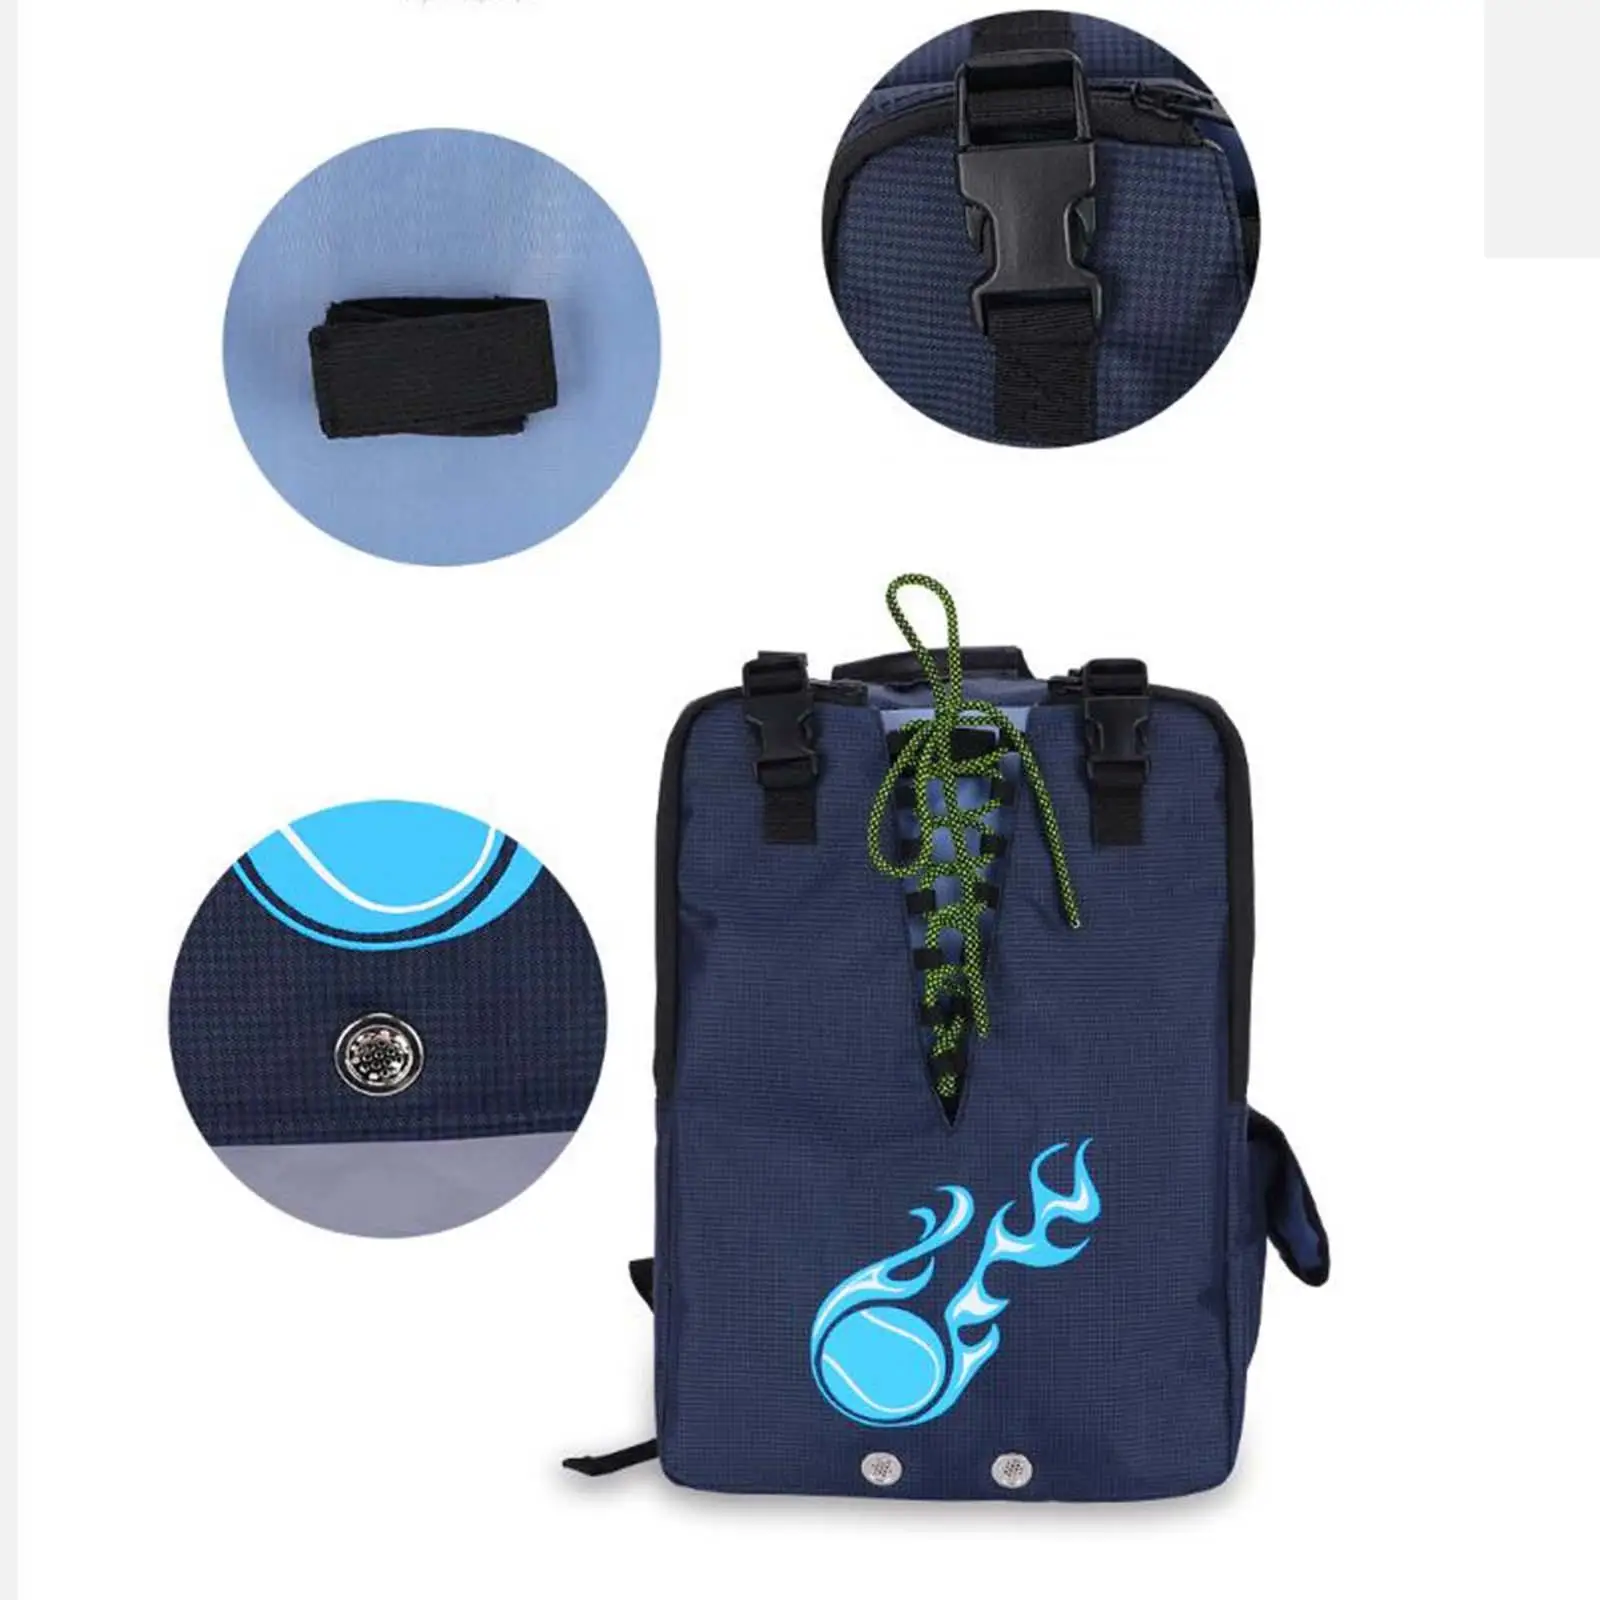 Tennis Bag Durable Large Racket Bag Badminton Backpack Sports Backpack for